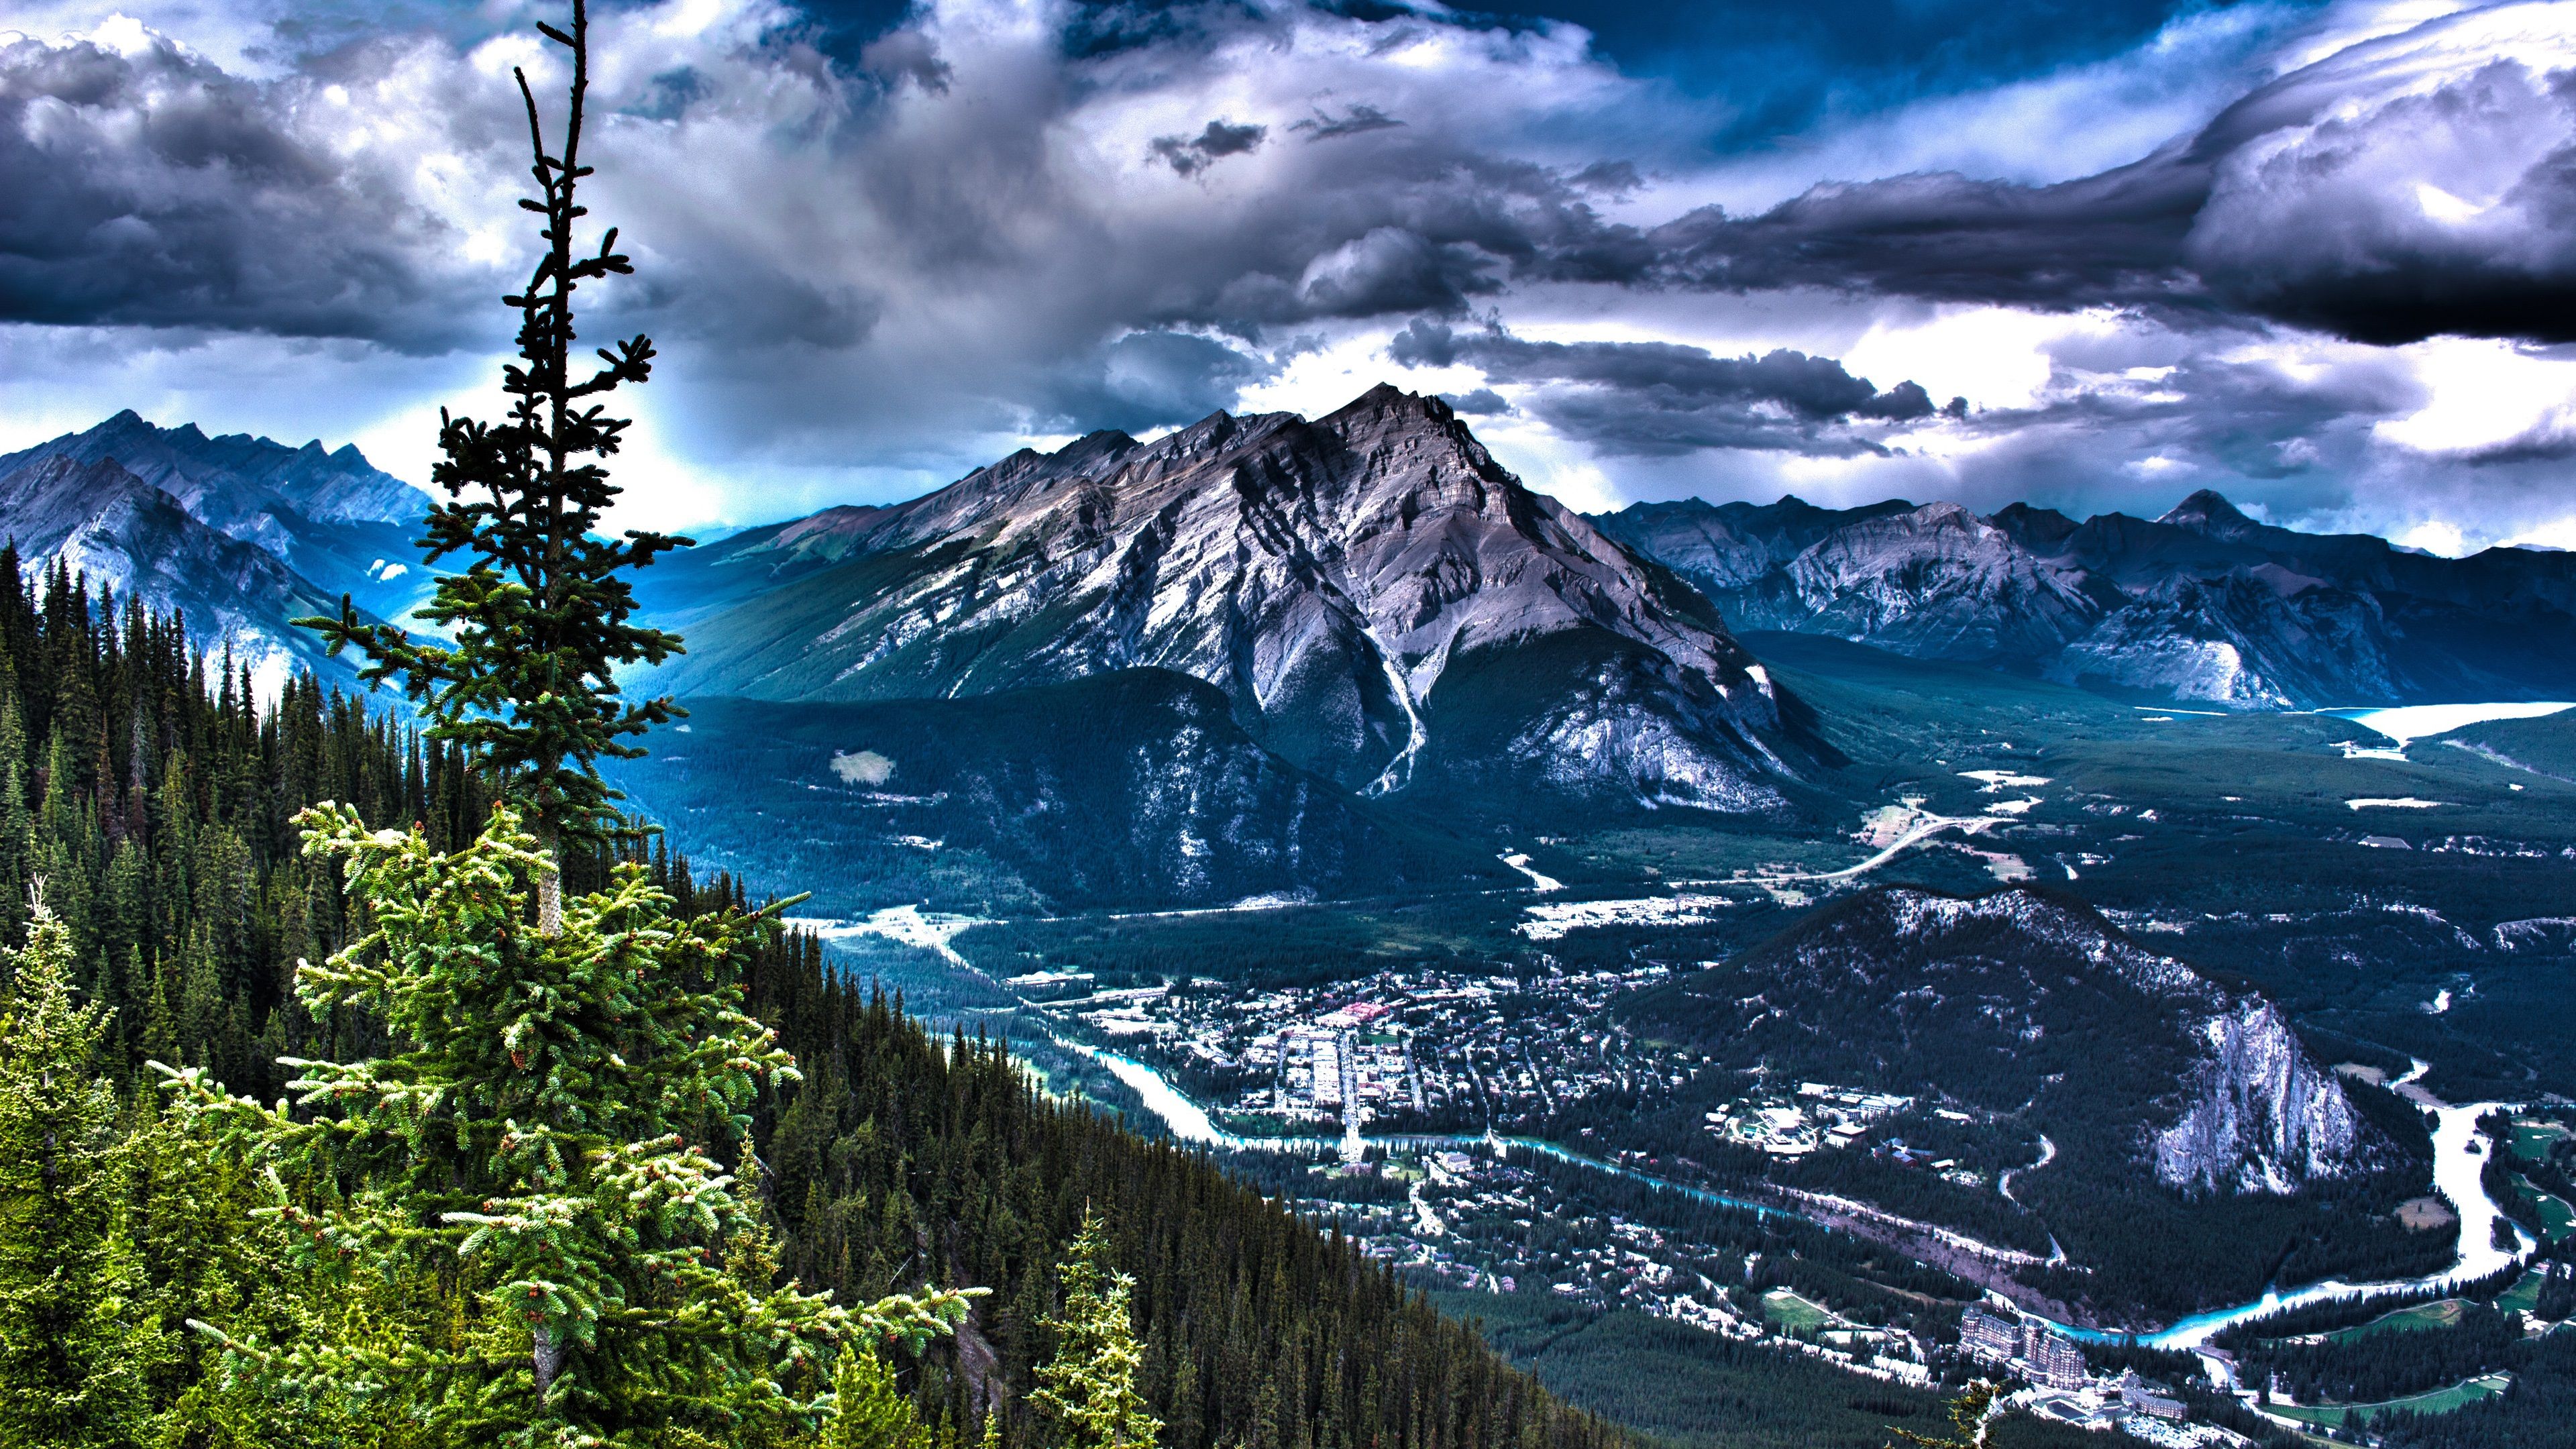  4k Natur Hintergrundbild 3840x2160. Kanada Schöne Natur Landschaft, Berge, Bäume, Wolken, HDR Stil 3840x2160 UHD 4K Hintergrundbilder, HD, Bild